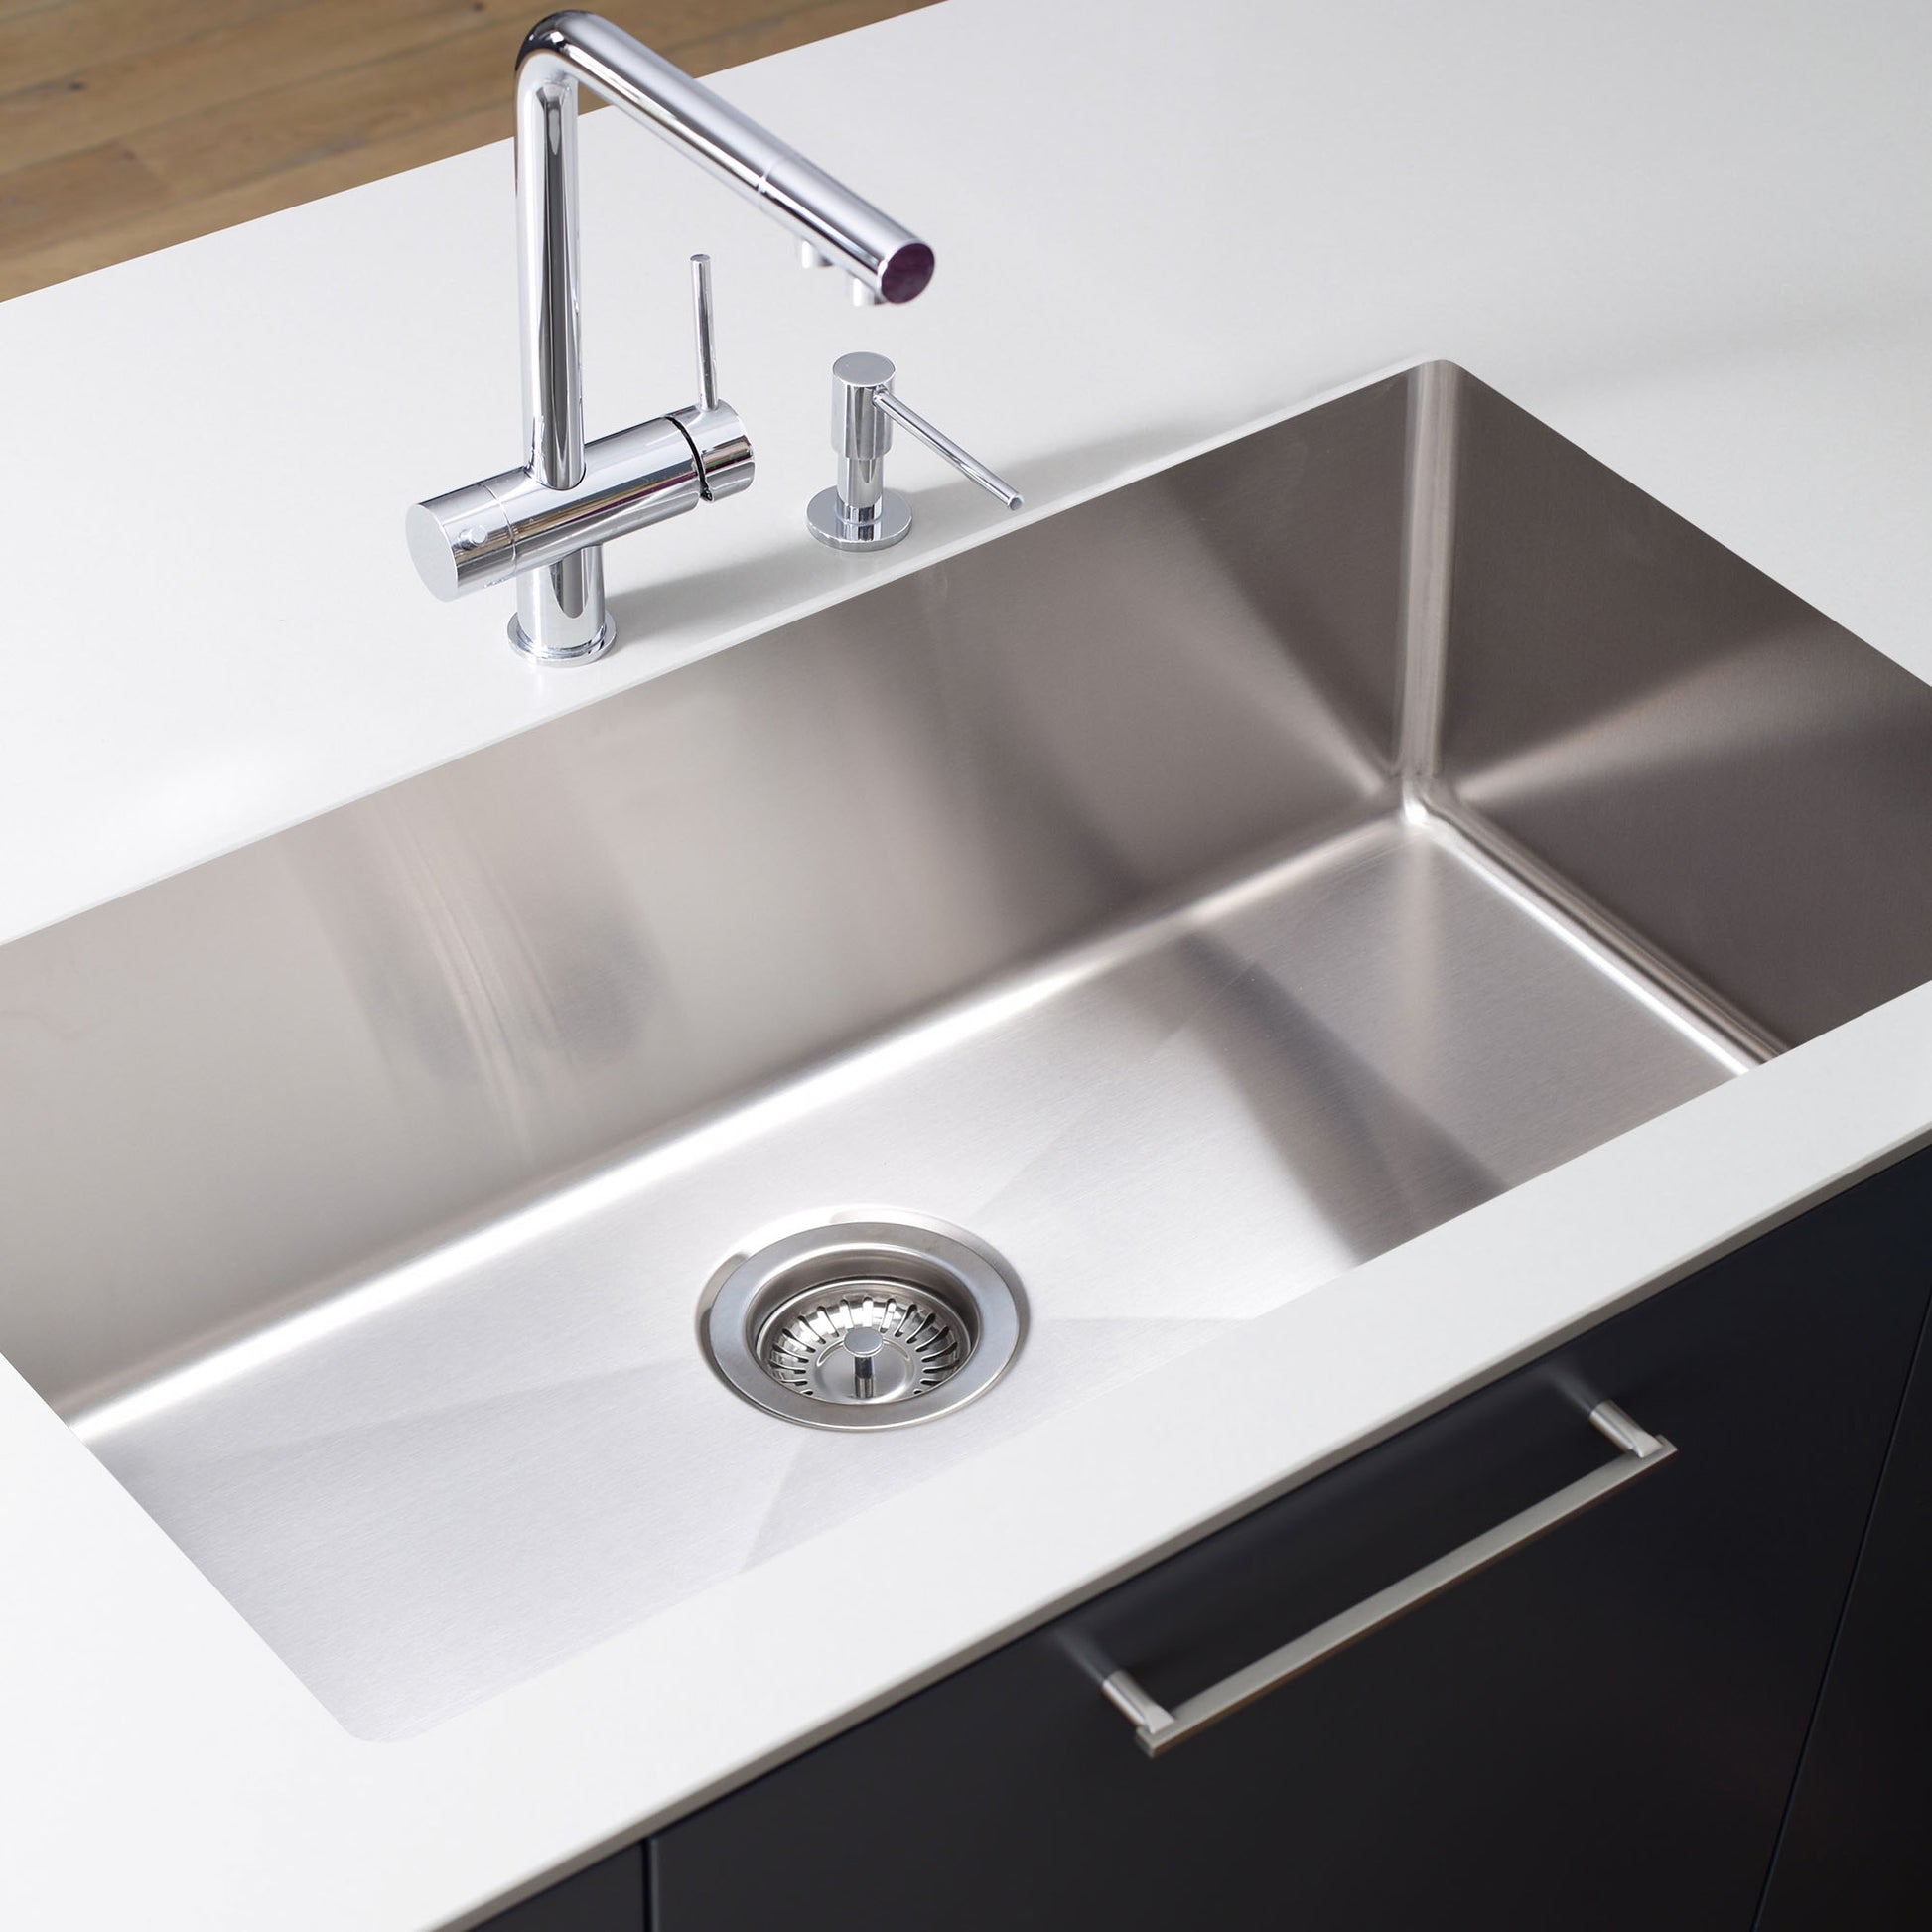 Harlingen 33" x 19" Kitchen Sink Undermount Single Bowl Stainless Steel 10" Deep